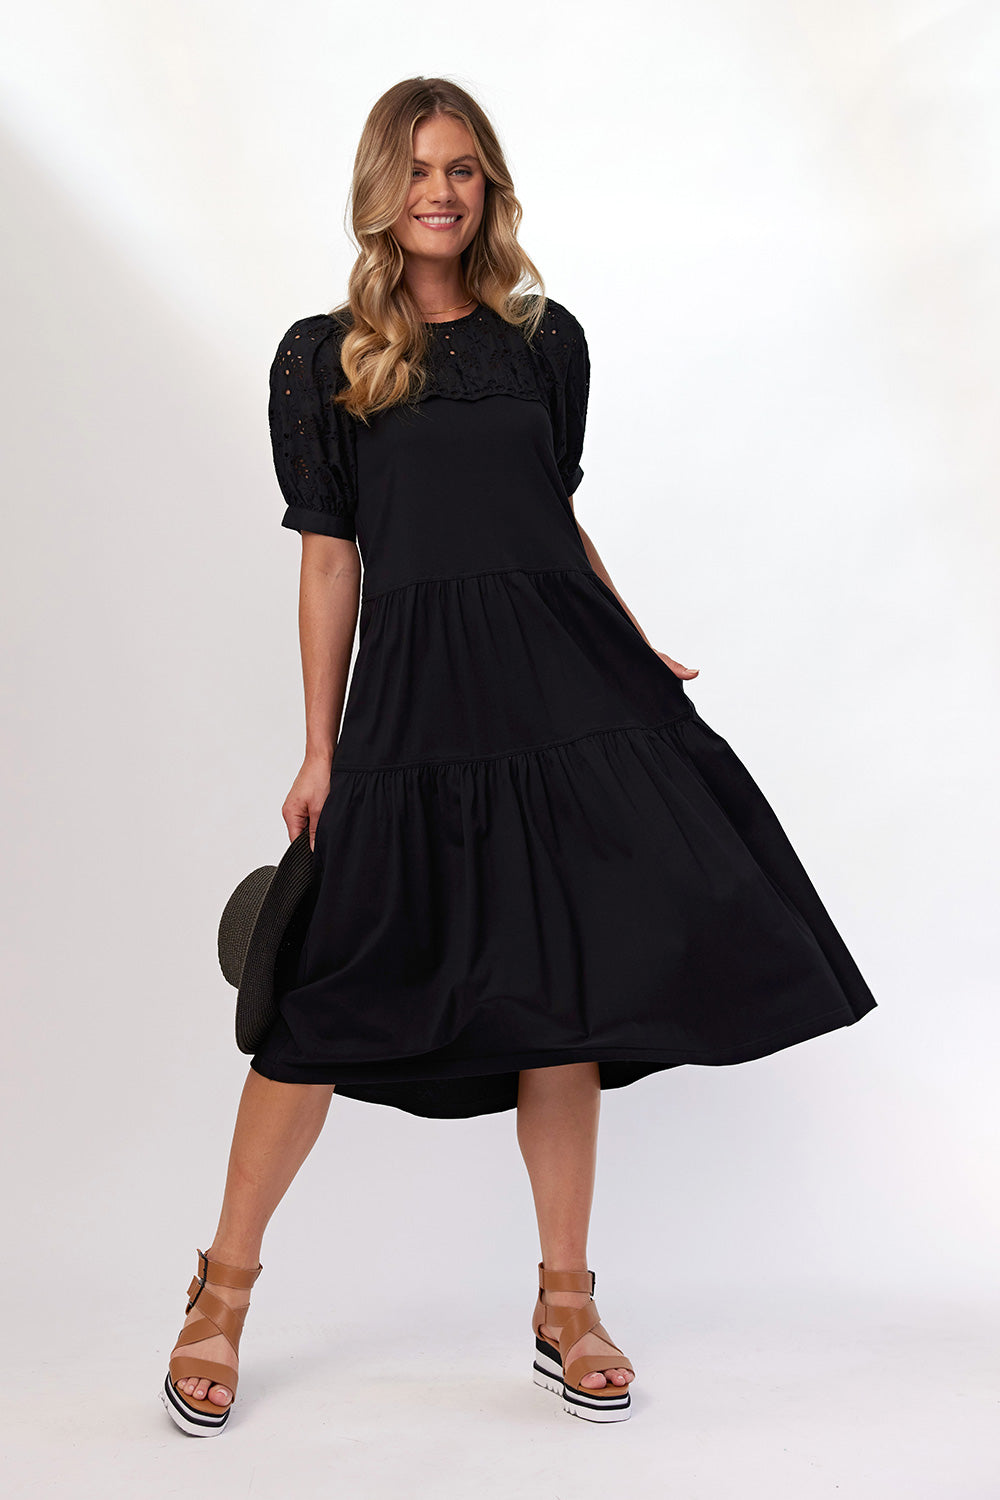 Sydney Lace Dress Black